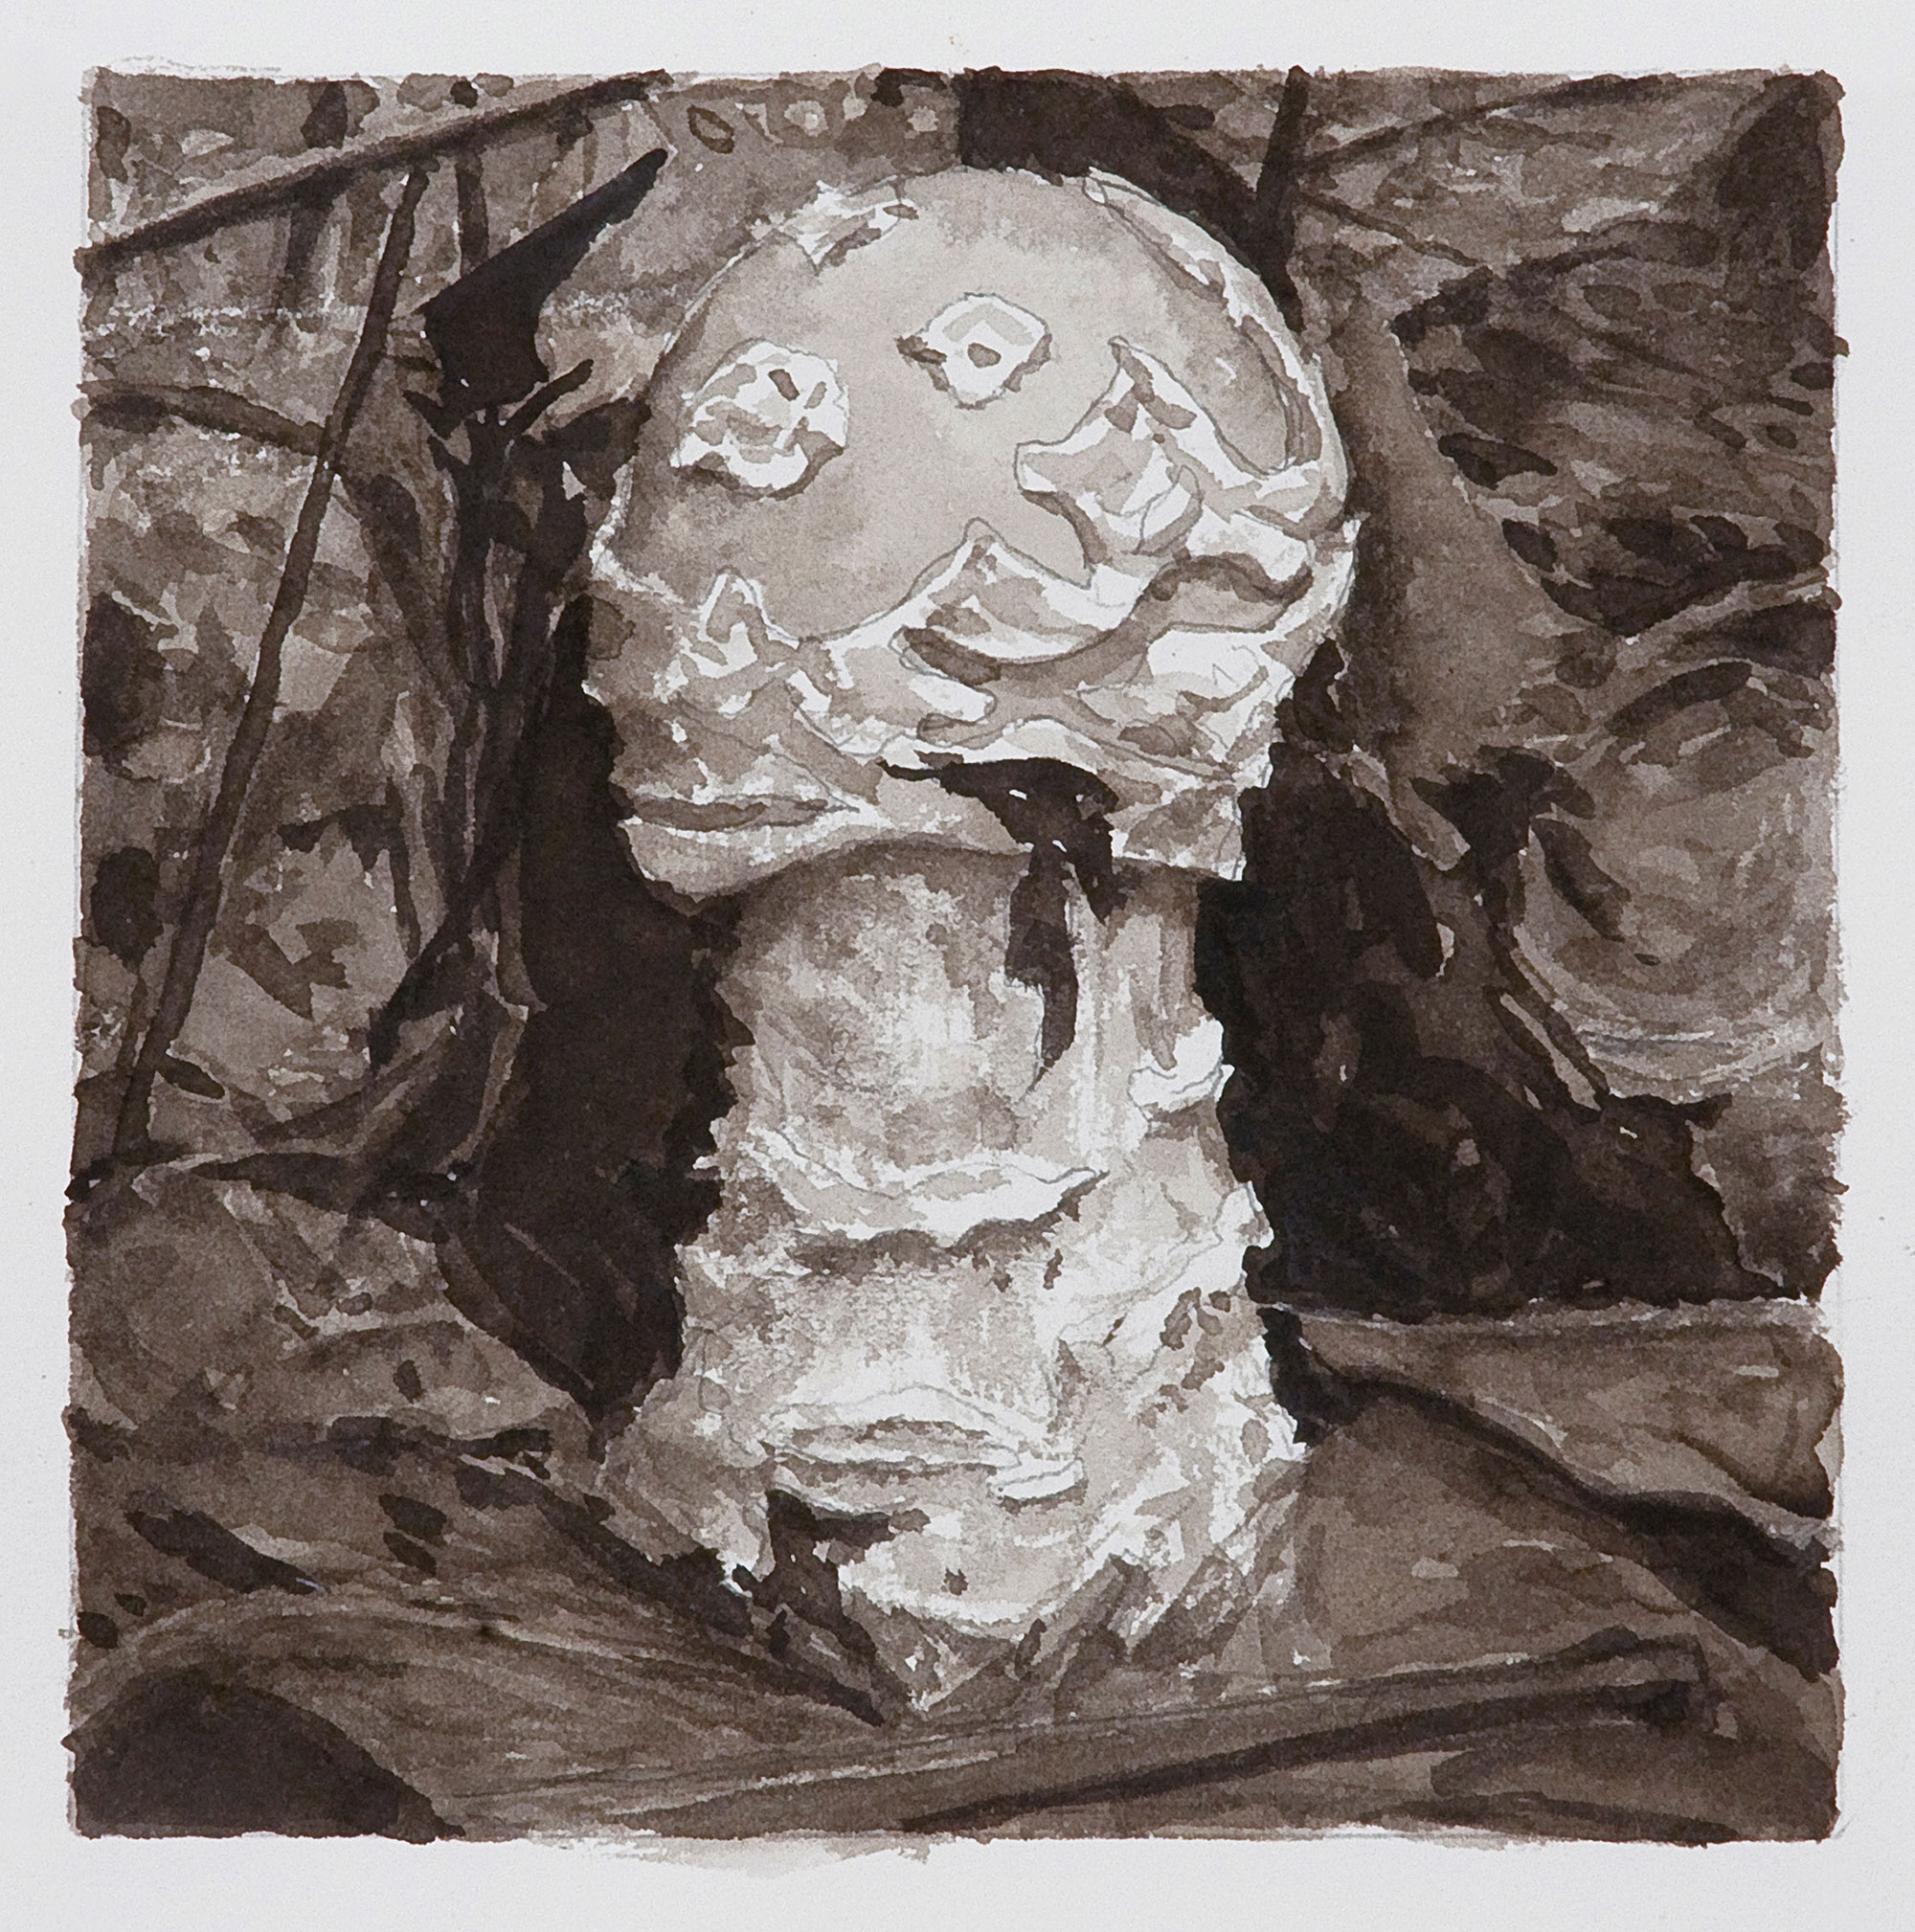 Mushroom 8